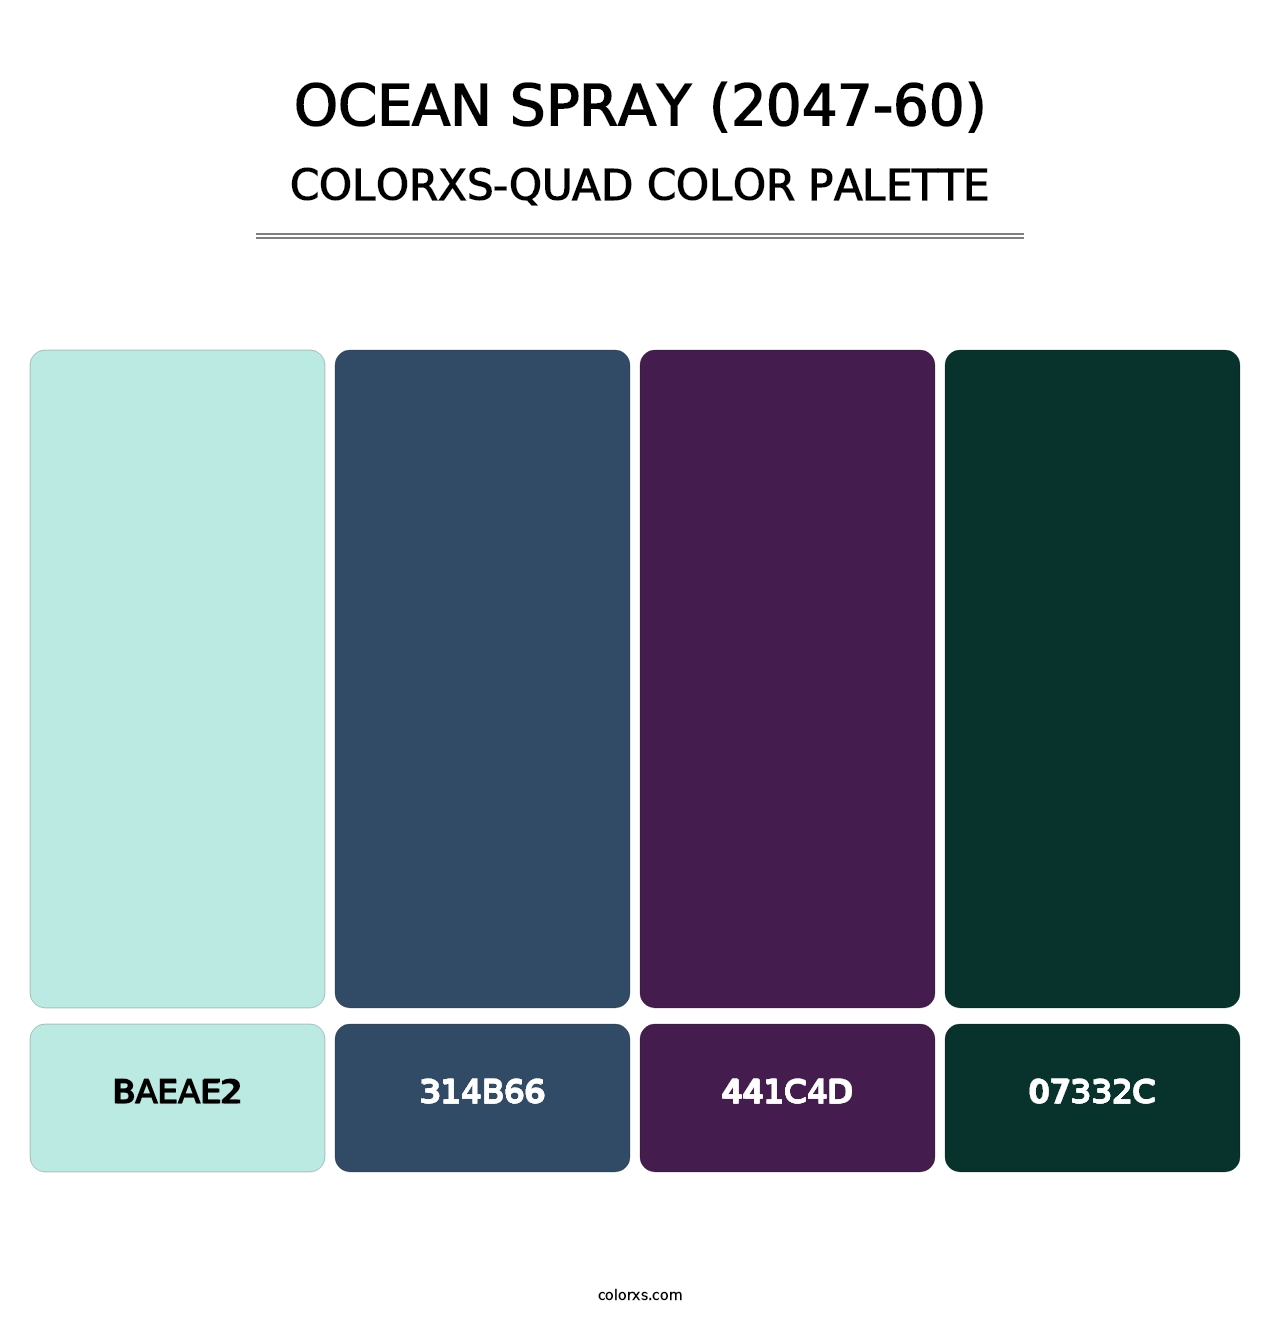 Ocean Spray (2047-60) - Colorxs Quad Palette